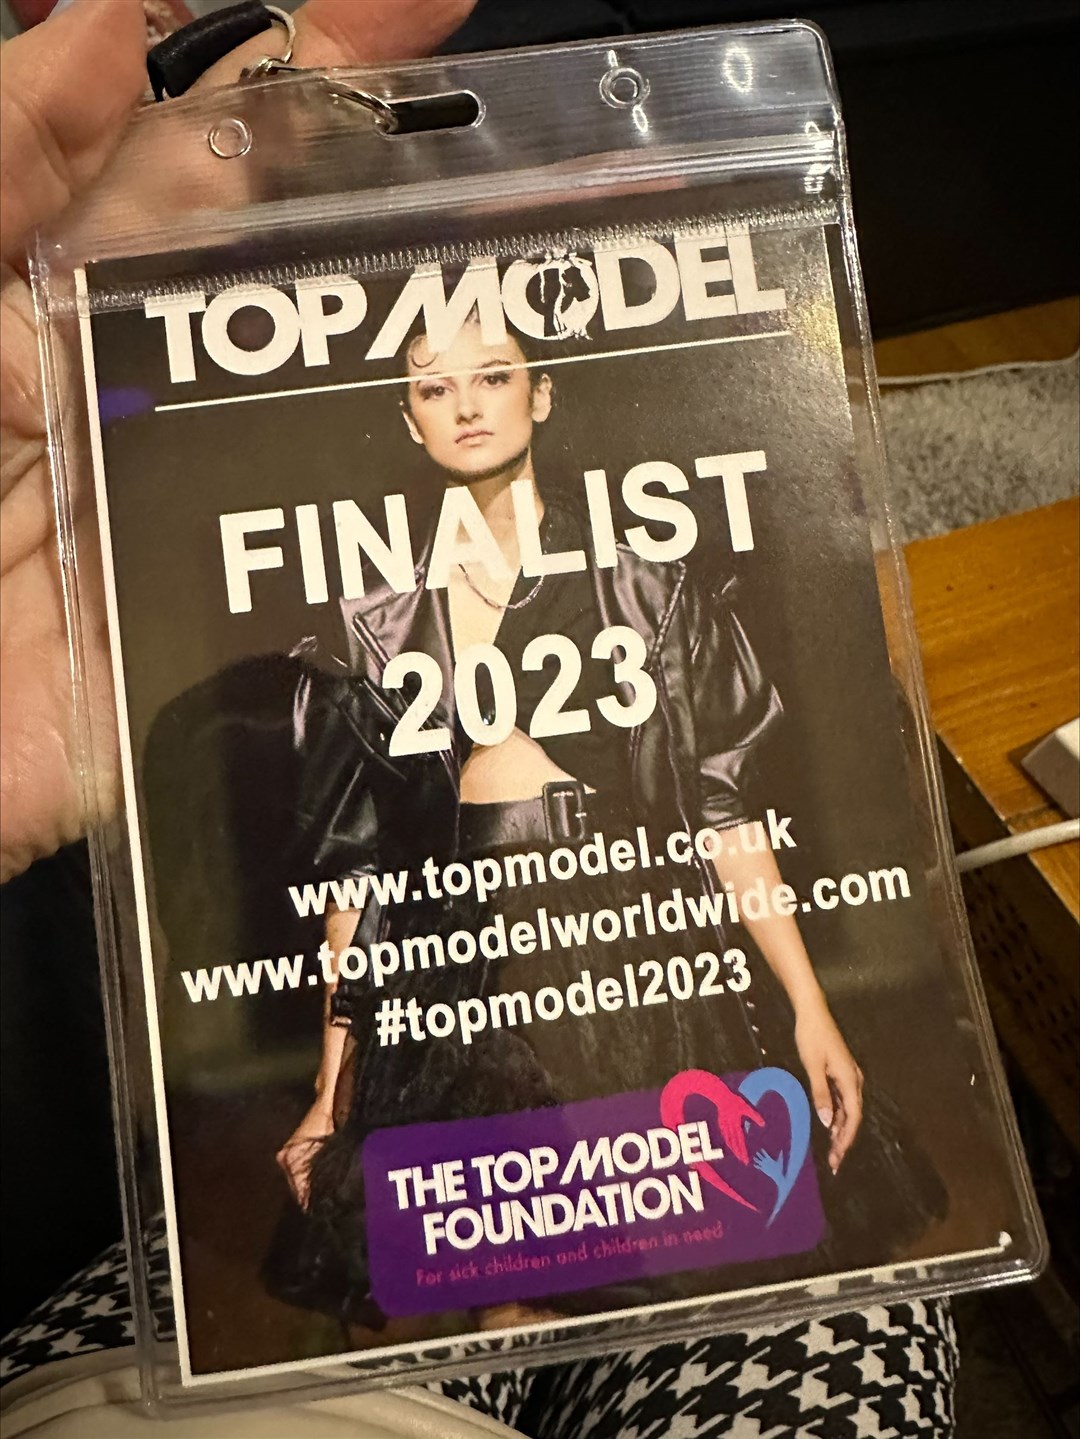 A Top Model UK finalist pass..